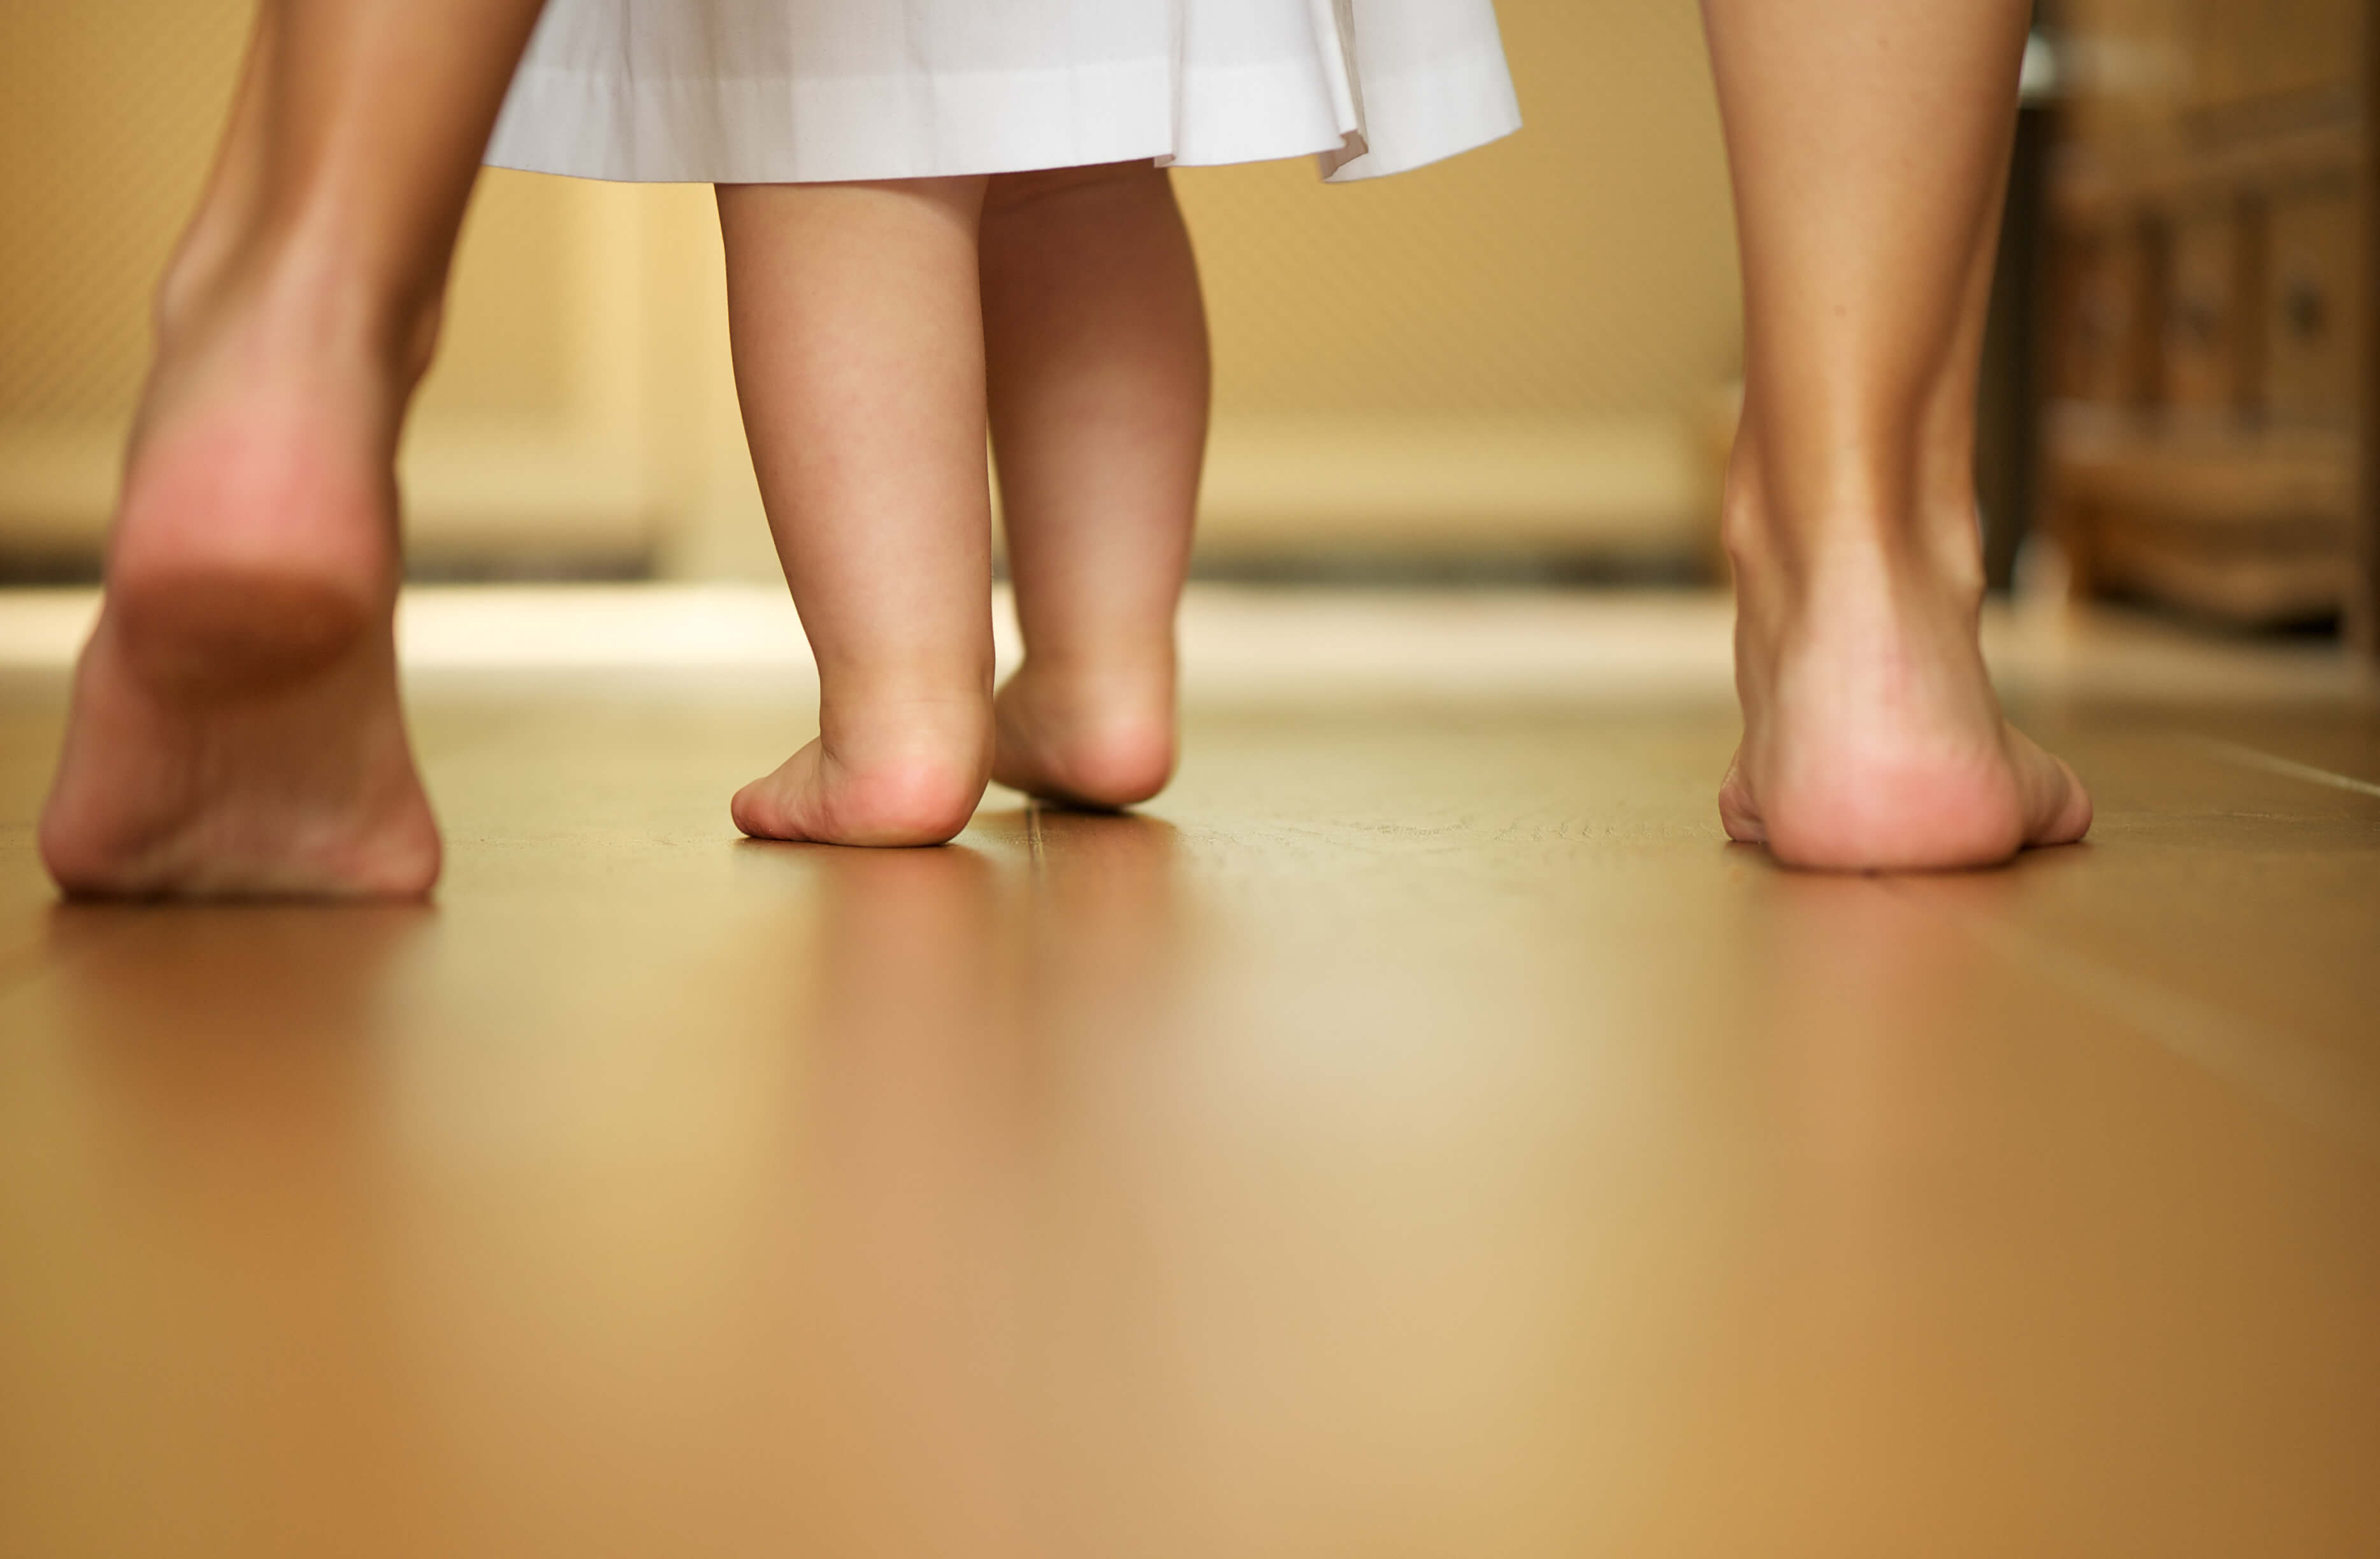 bebé aprendiendo a caminar de manos de su mamá